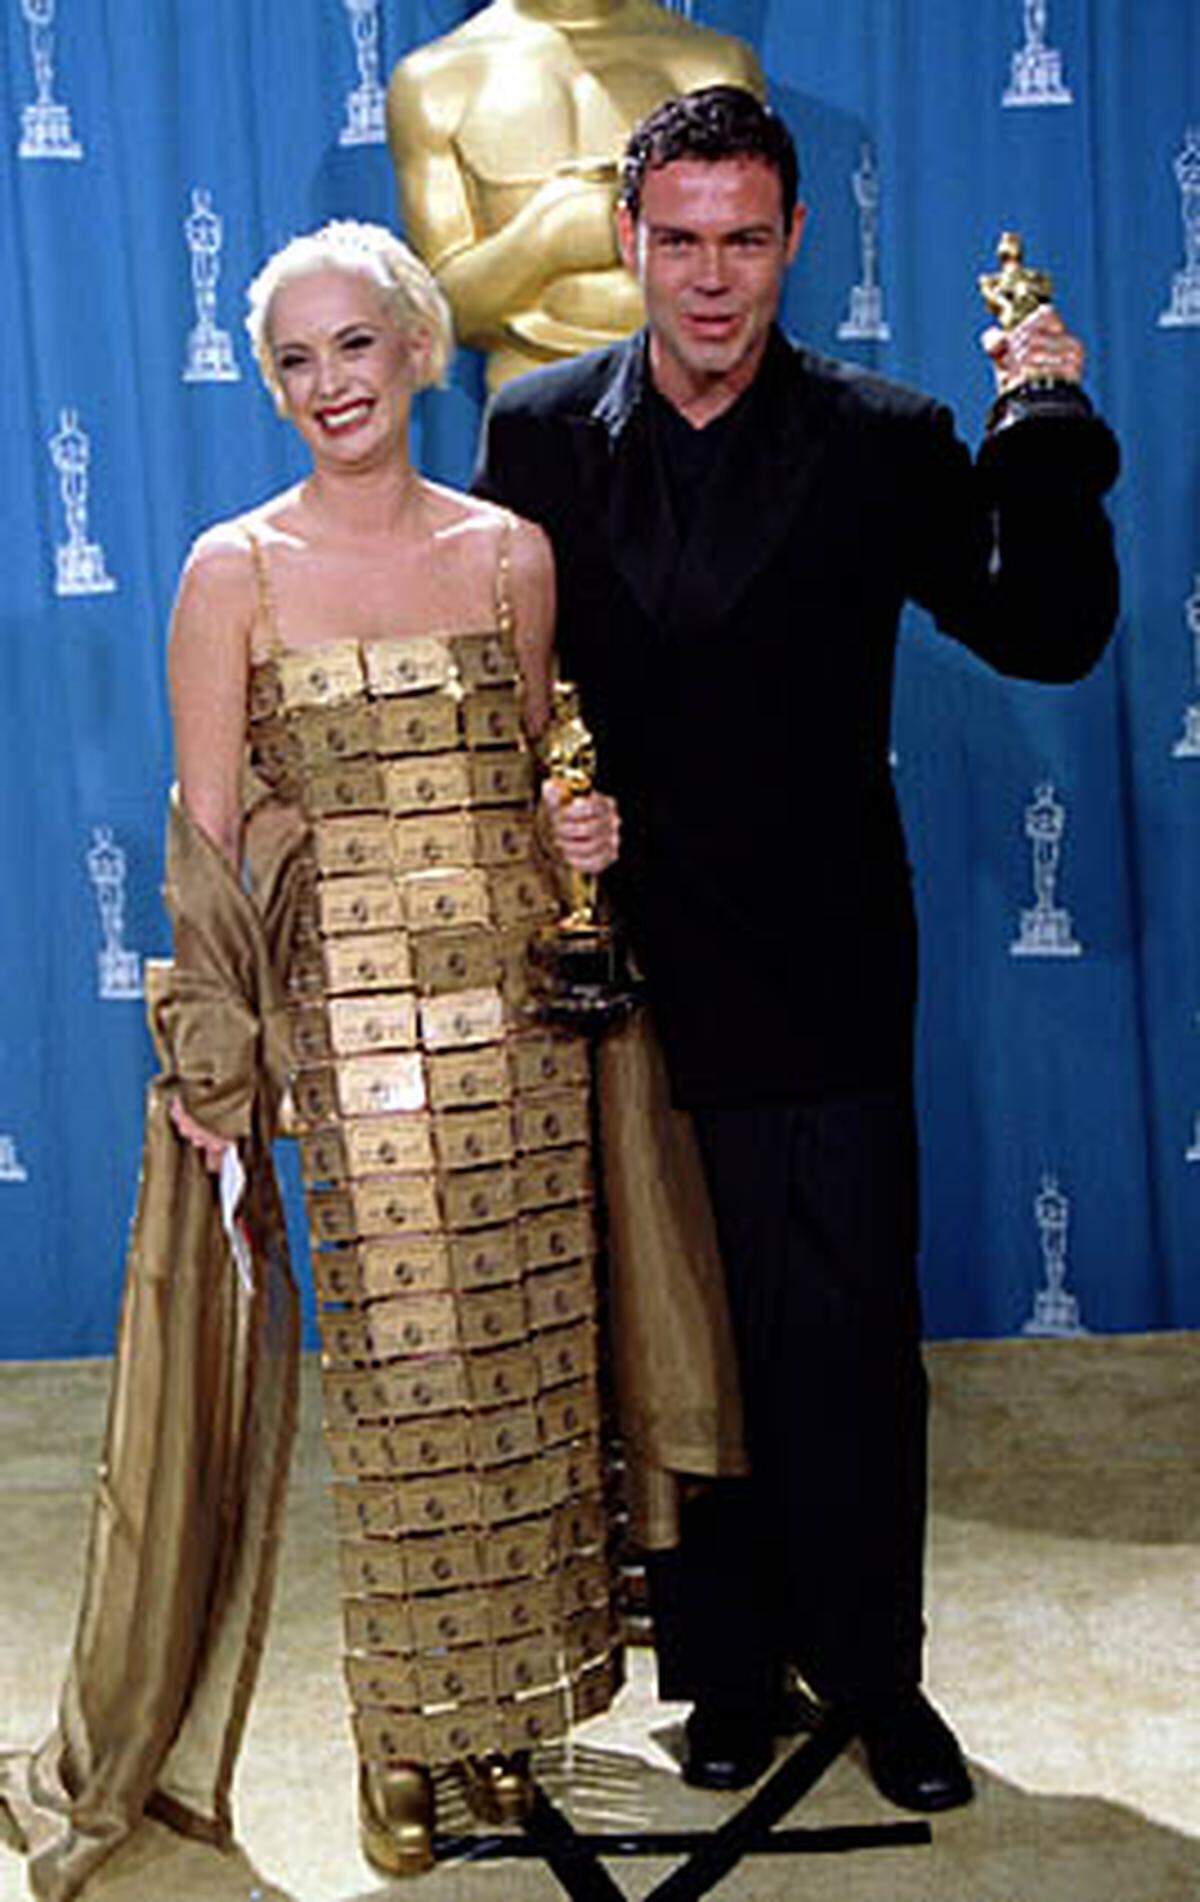 Lizzy Gardiners Beruf ist es, Kostüme zu designen. Scheinbar ist sie gut darin, halten sie und Partner Tim Chappel doch 1995 einen Oscar für die Drag-Komödie "Priscilla: Königin der Wüste" in der Hand. Ihr Kleid sieht allerdings nach Keditkarten-Schleichwerbung aus. Und ja, sie hatte drunter etwas an.